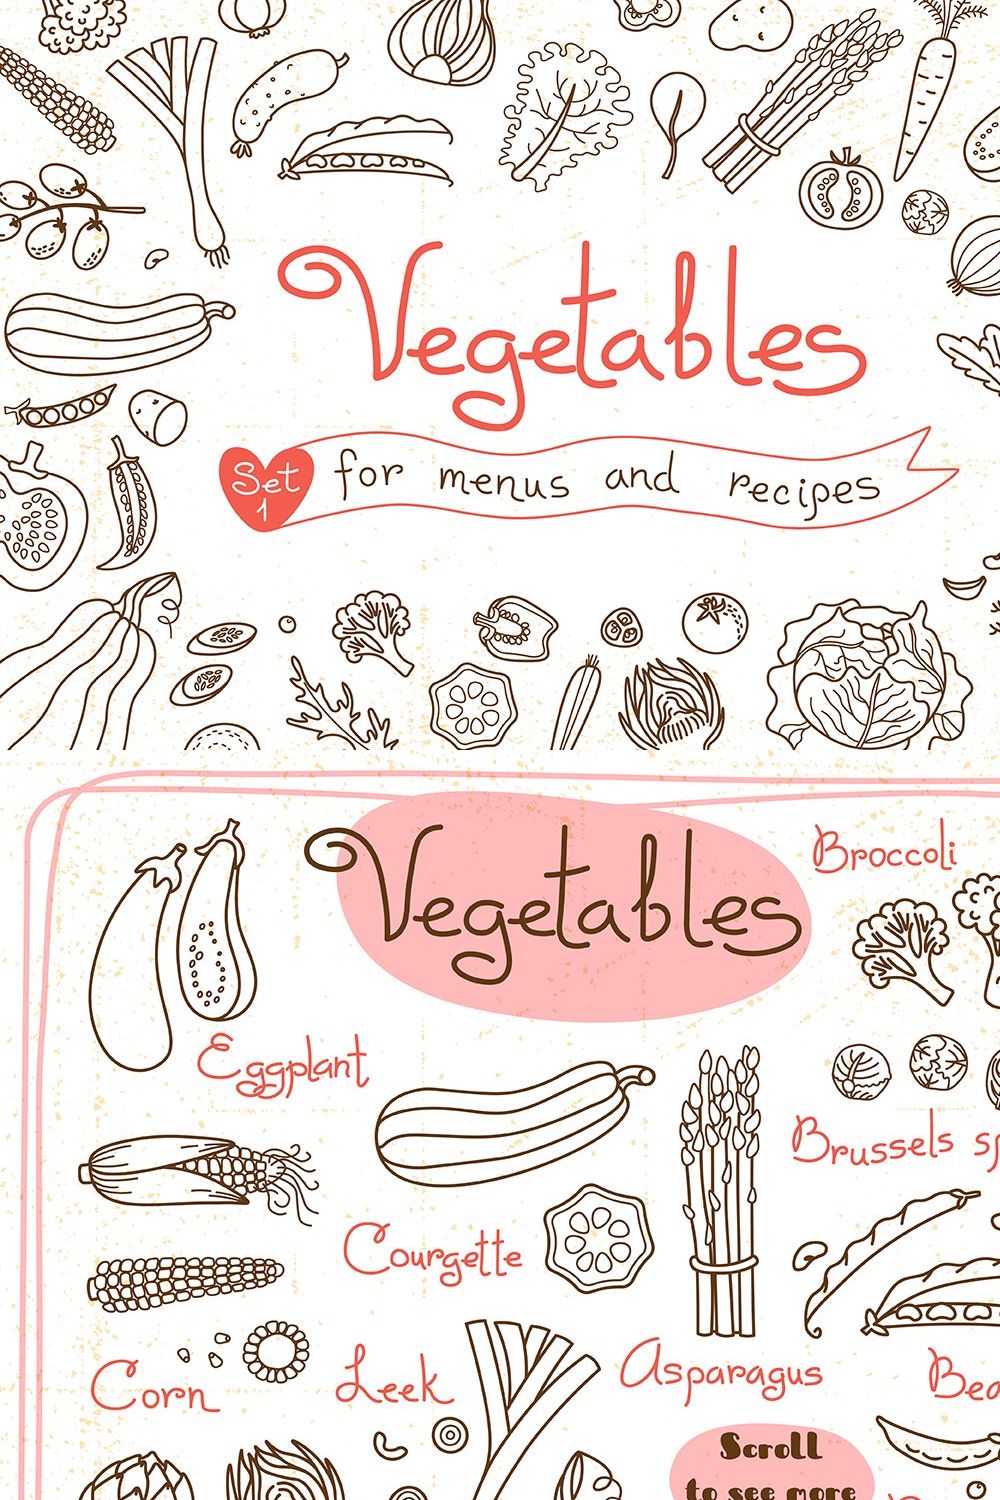 Vegetables - Design Set pinterest preview image.